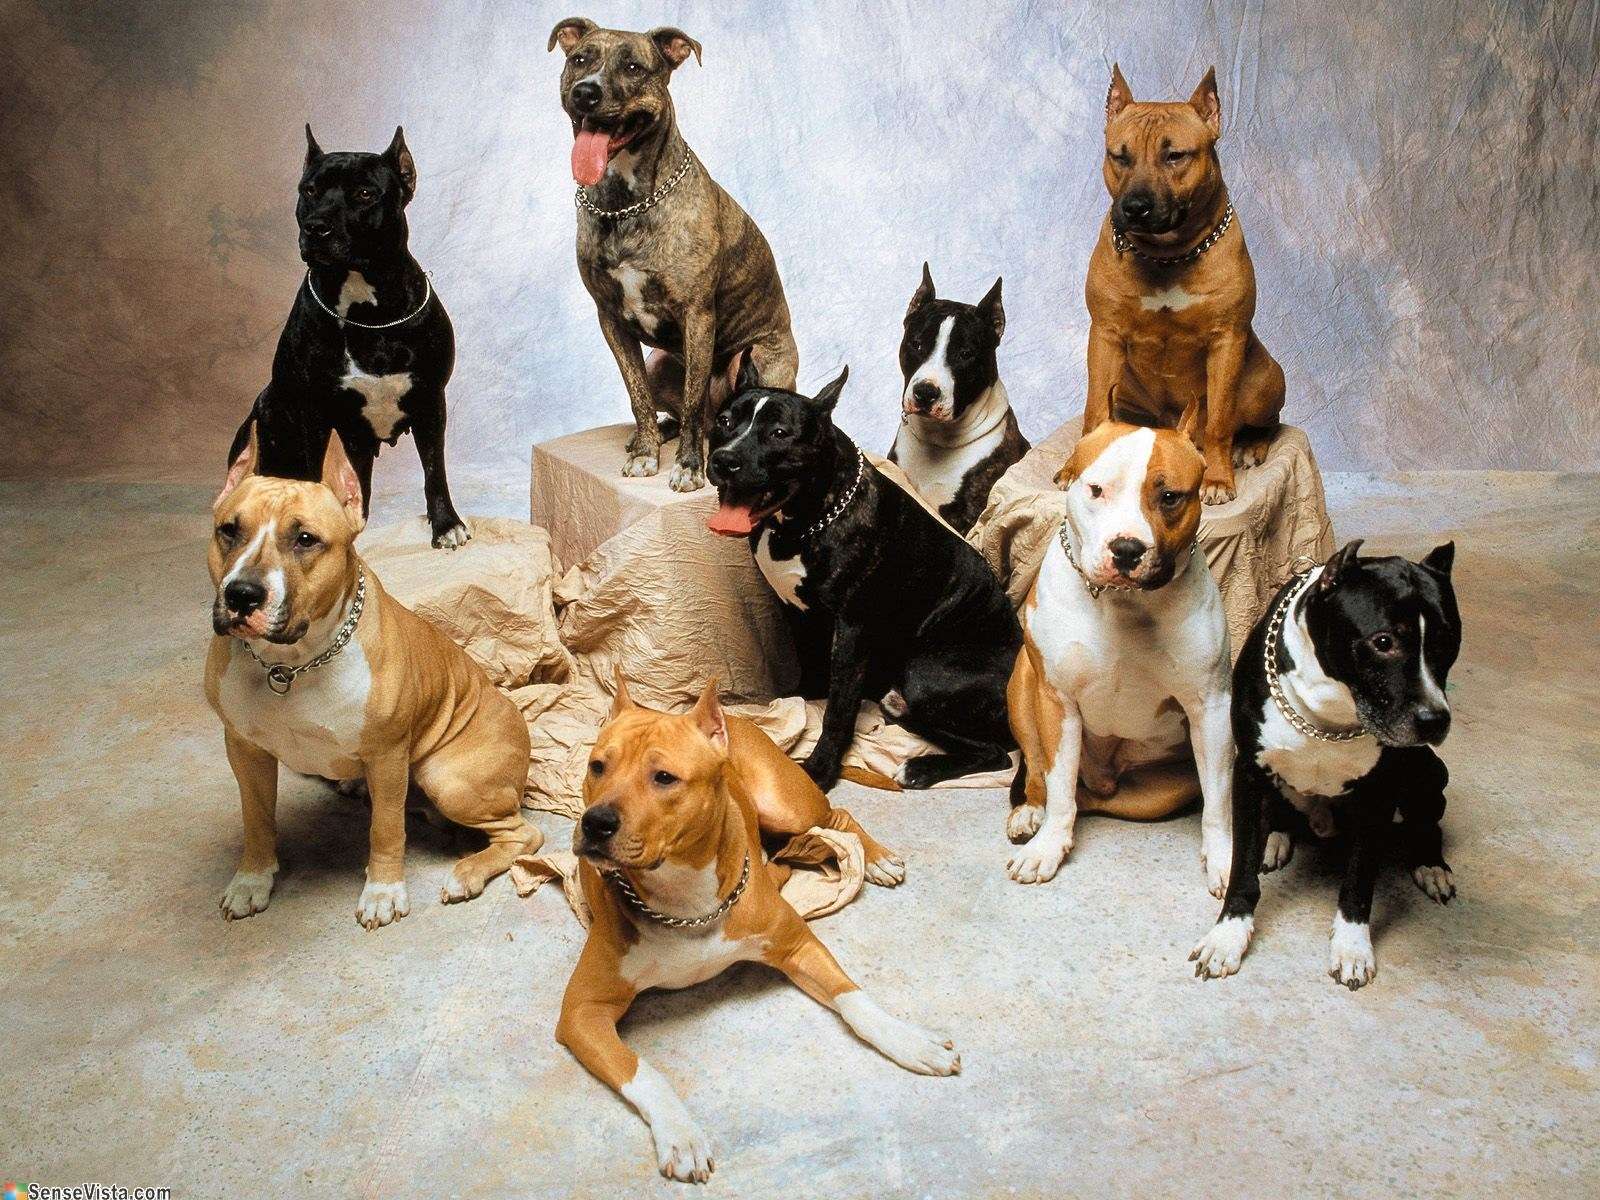 Американский стафф фото собаки, Американский стафф фото породы собак обои,  фото фотографии на рабочий стол красивые животные лучшие картинки dog breed  изображение скачать бесплатно фото собачек собак